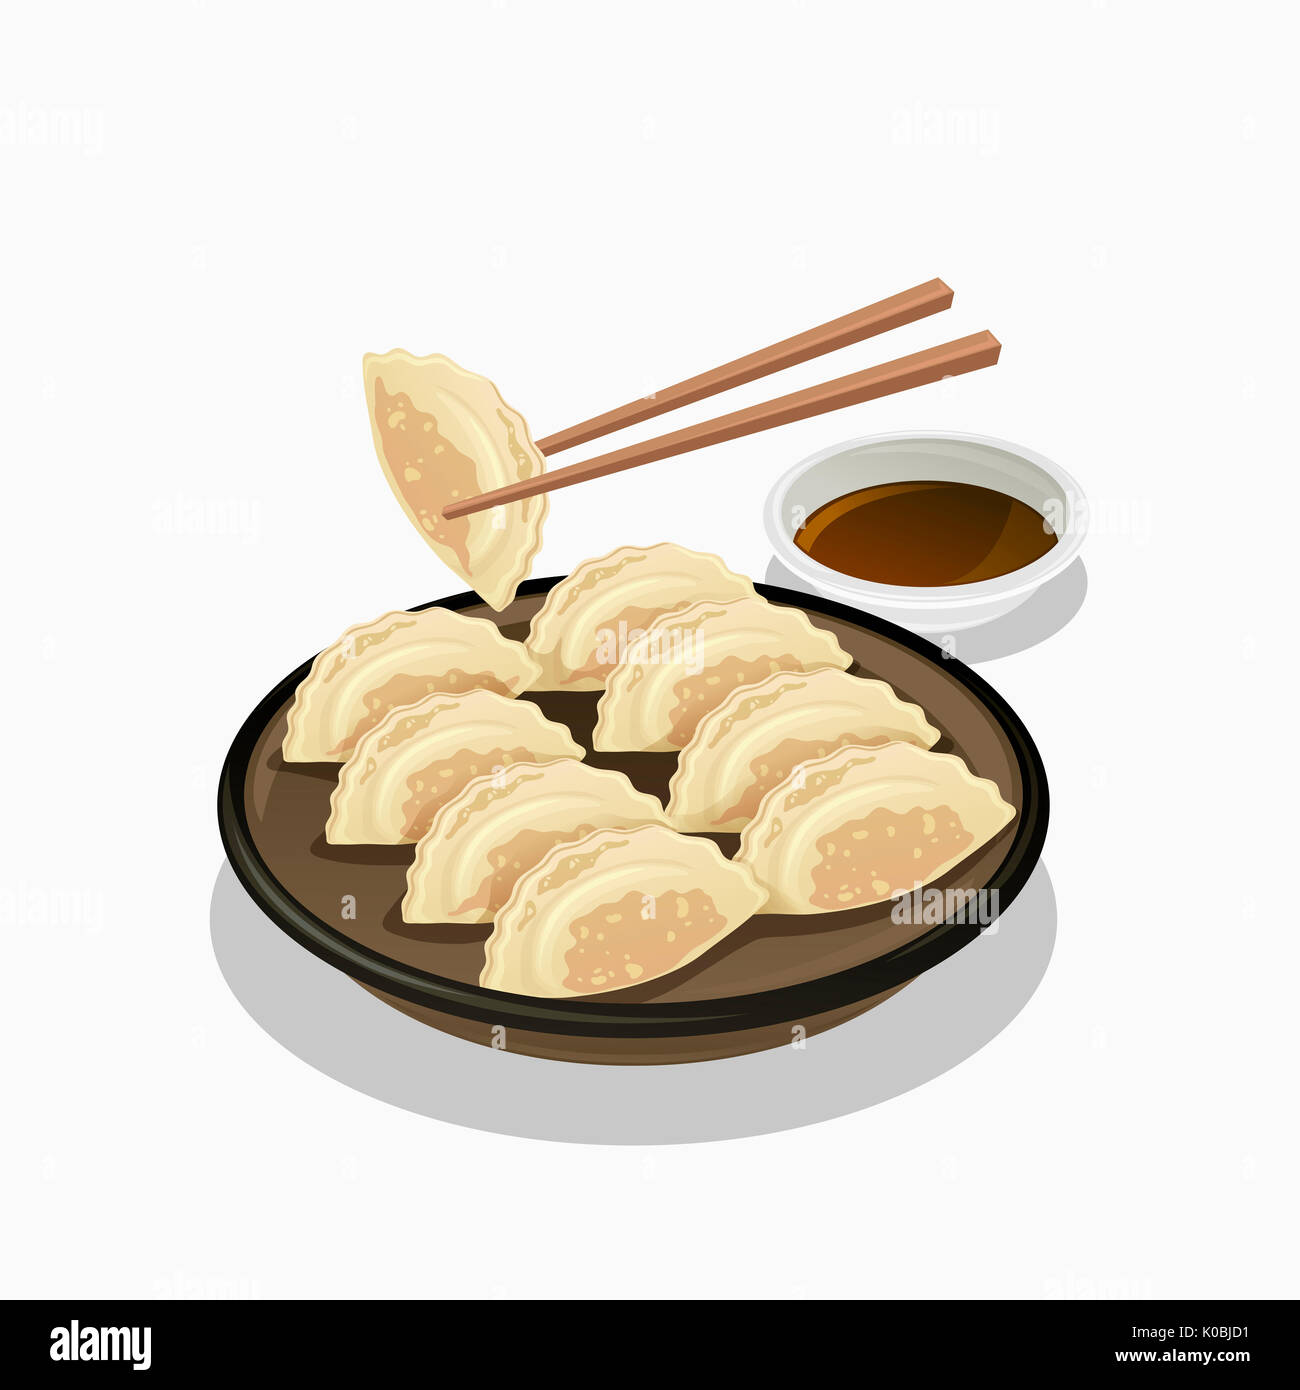 La cuisine chinoise avec des boulettes rôties Banque D'Images